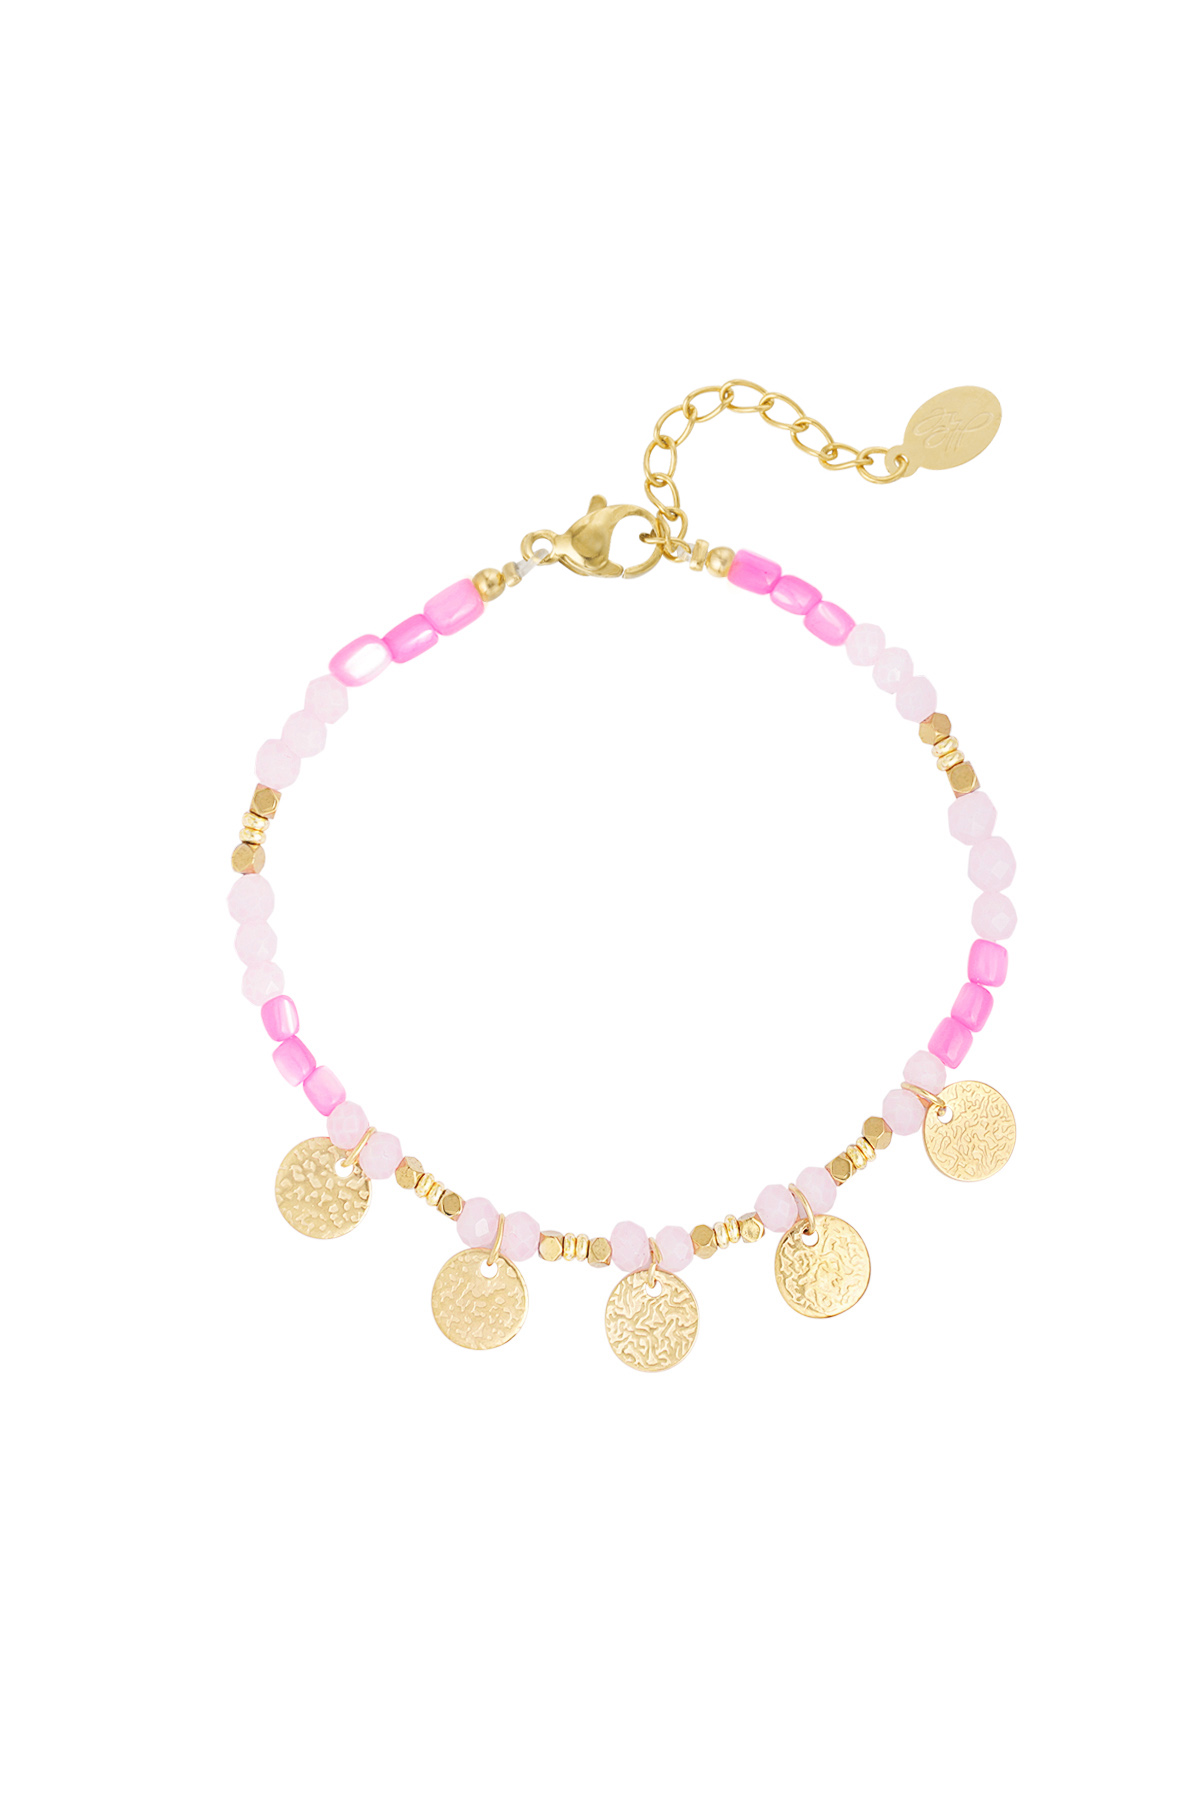 Bracelet free your mind - pink gold